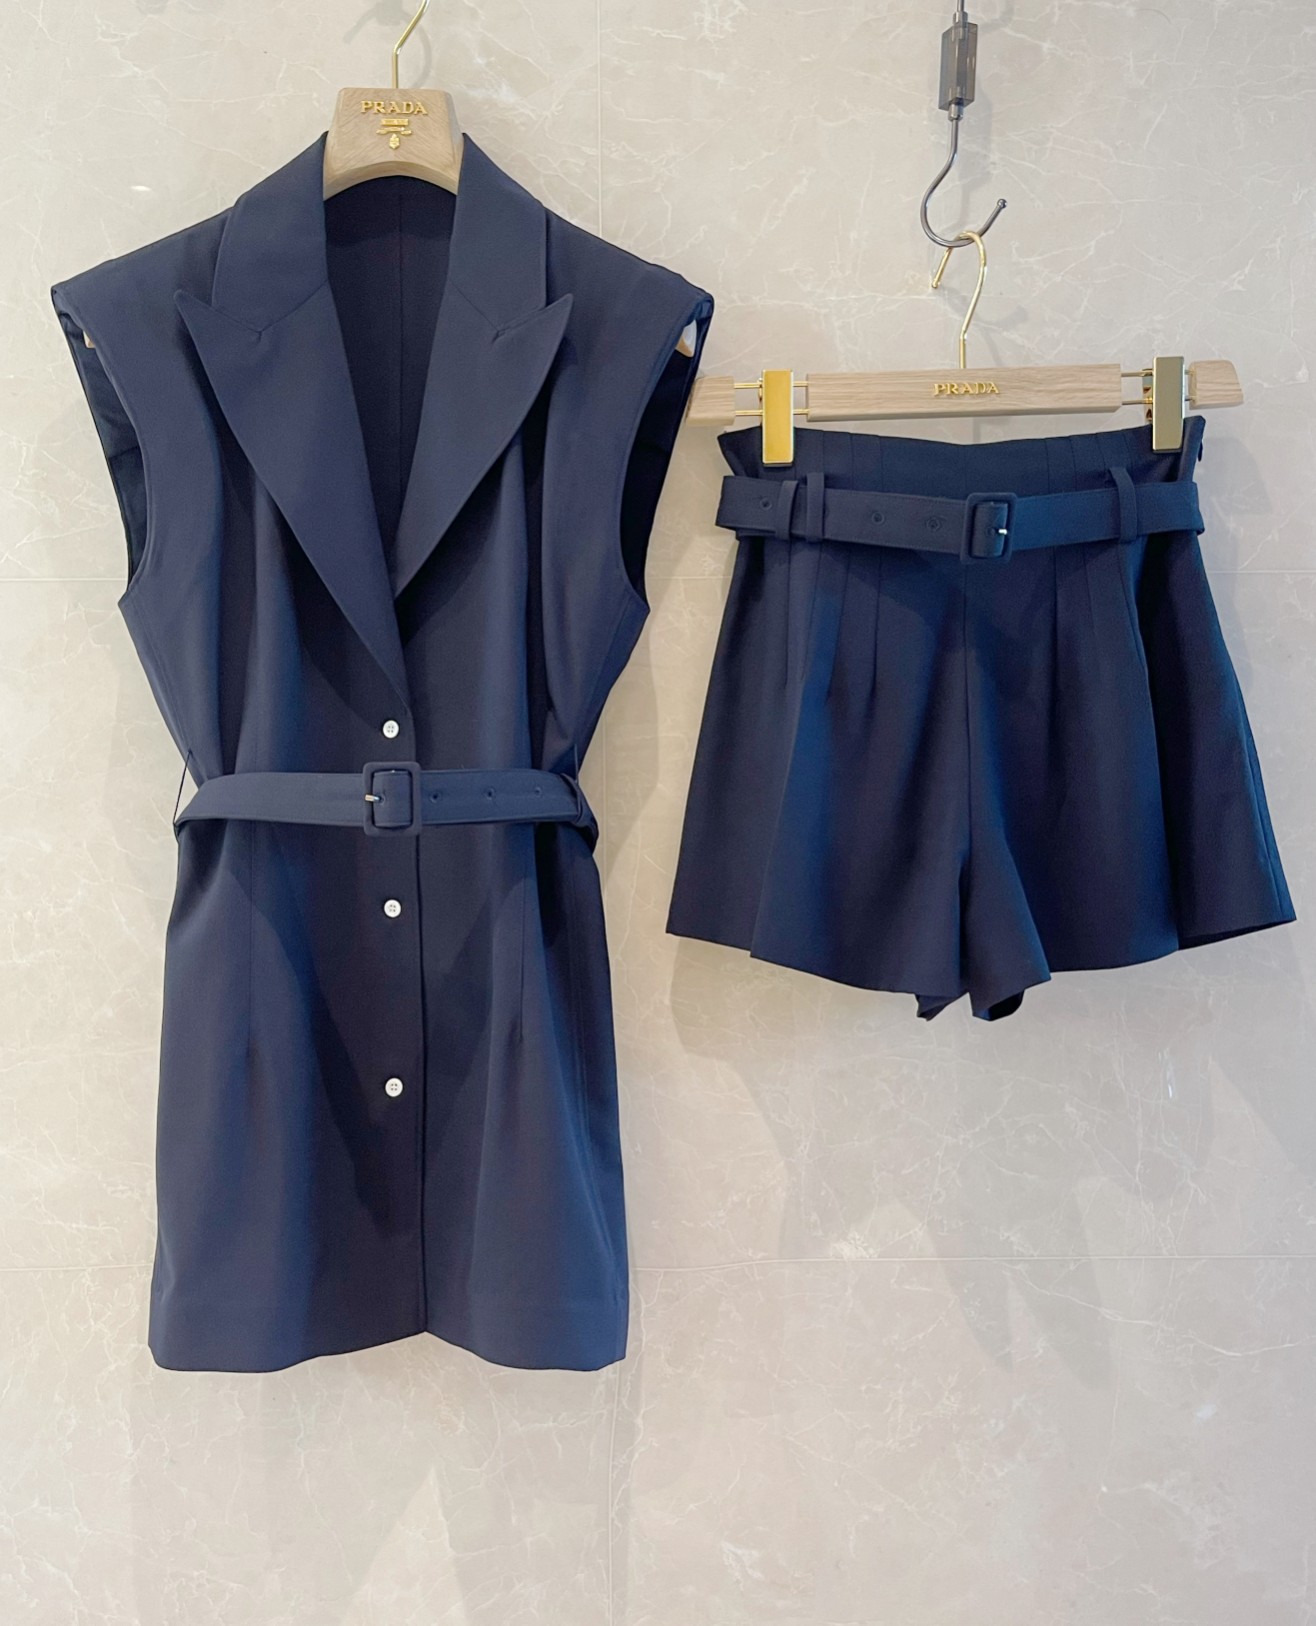 PAD新品马甲 短裤垫肩设计上身立体感强 时尚洋气蓝黑色 高级灰36-38-40